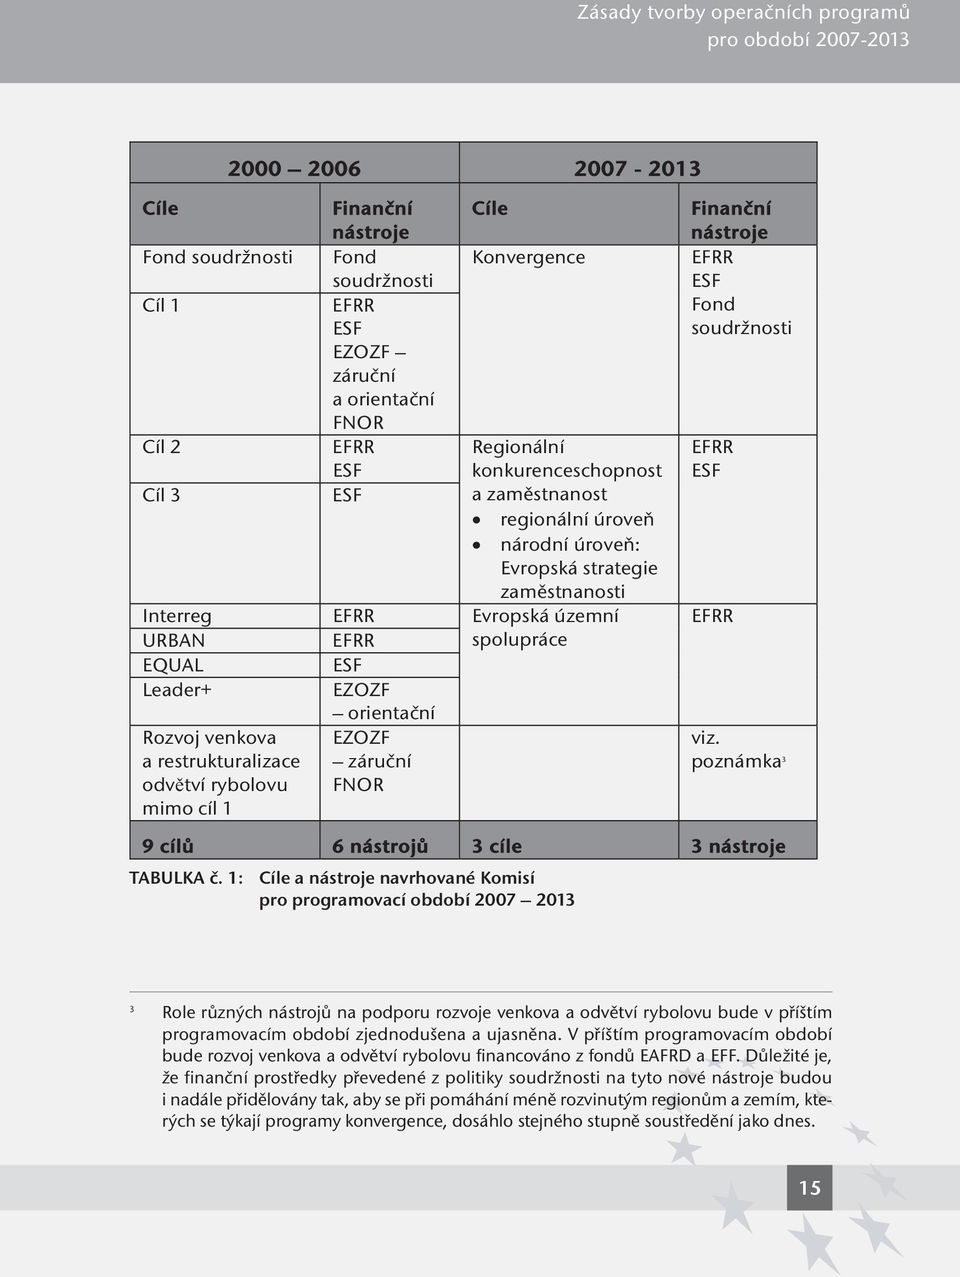 konkurenceschopnost a zaměstnanost regionální úroveň národní úroveň: Evropská strategie zaměstnanosti Evropská územní spolupráce Cíle a nástroje navrhované Komisí pro programovací období 2007 2013